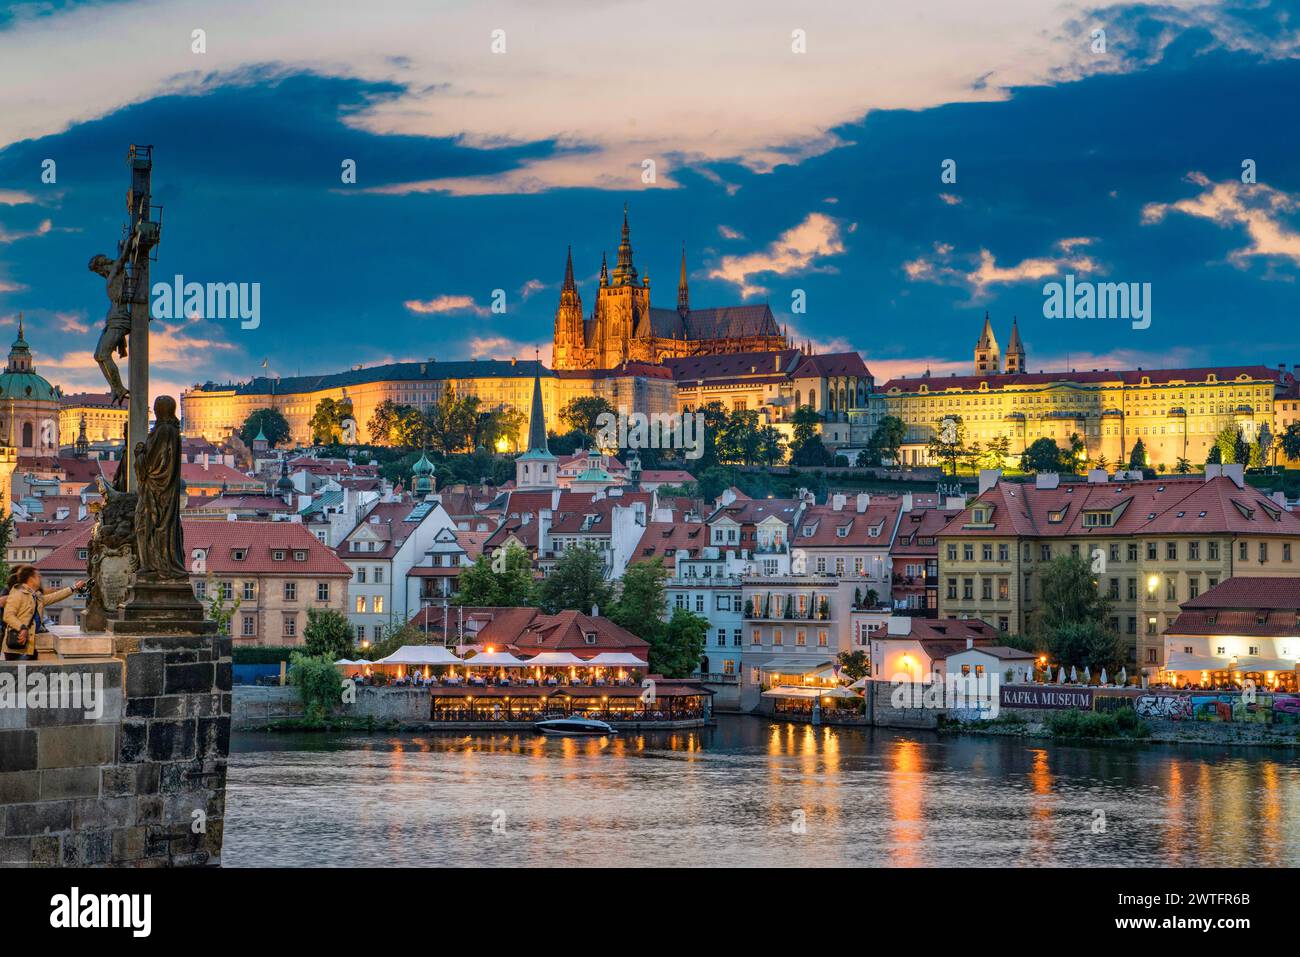 La cathédrale Saint-Guy du Château de Prague et de la vieille ville, au crépuscule Banque D'Images